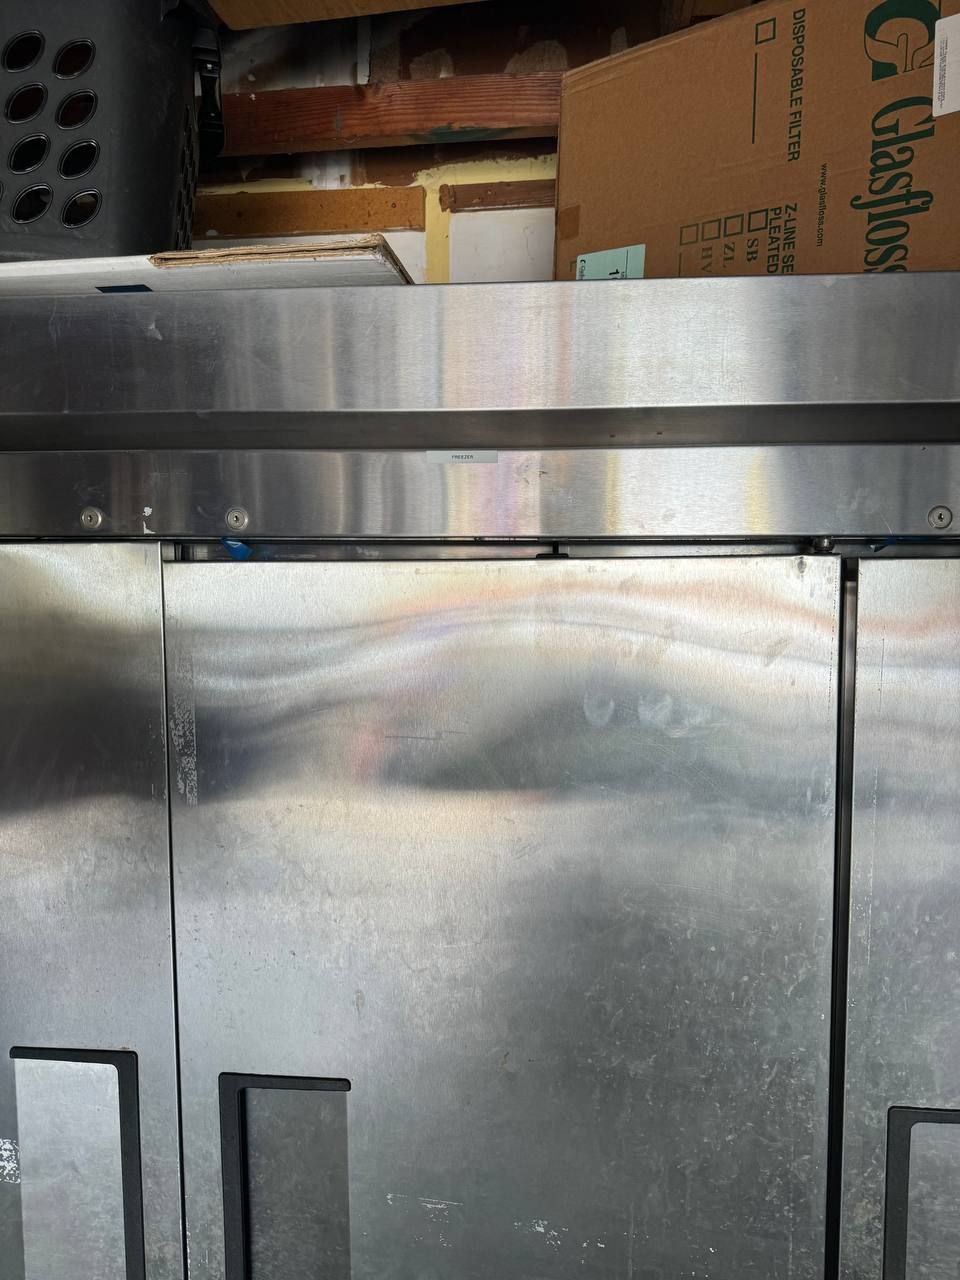 Freezer True Repair in San Diego